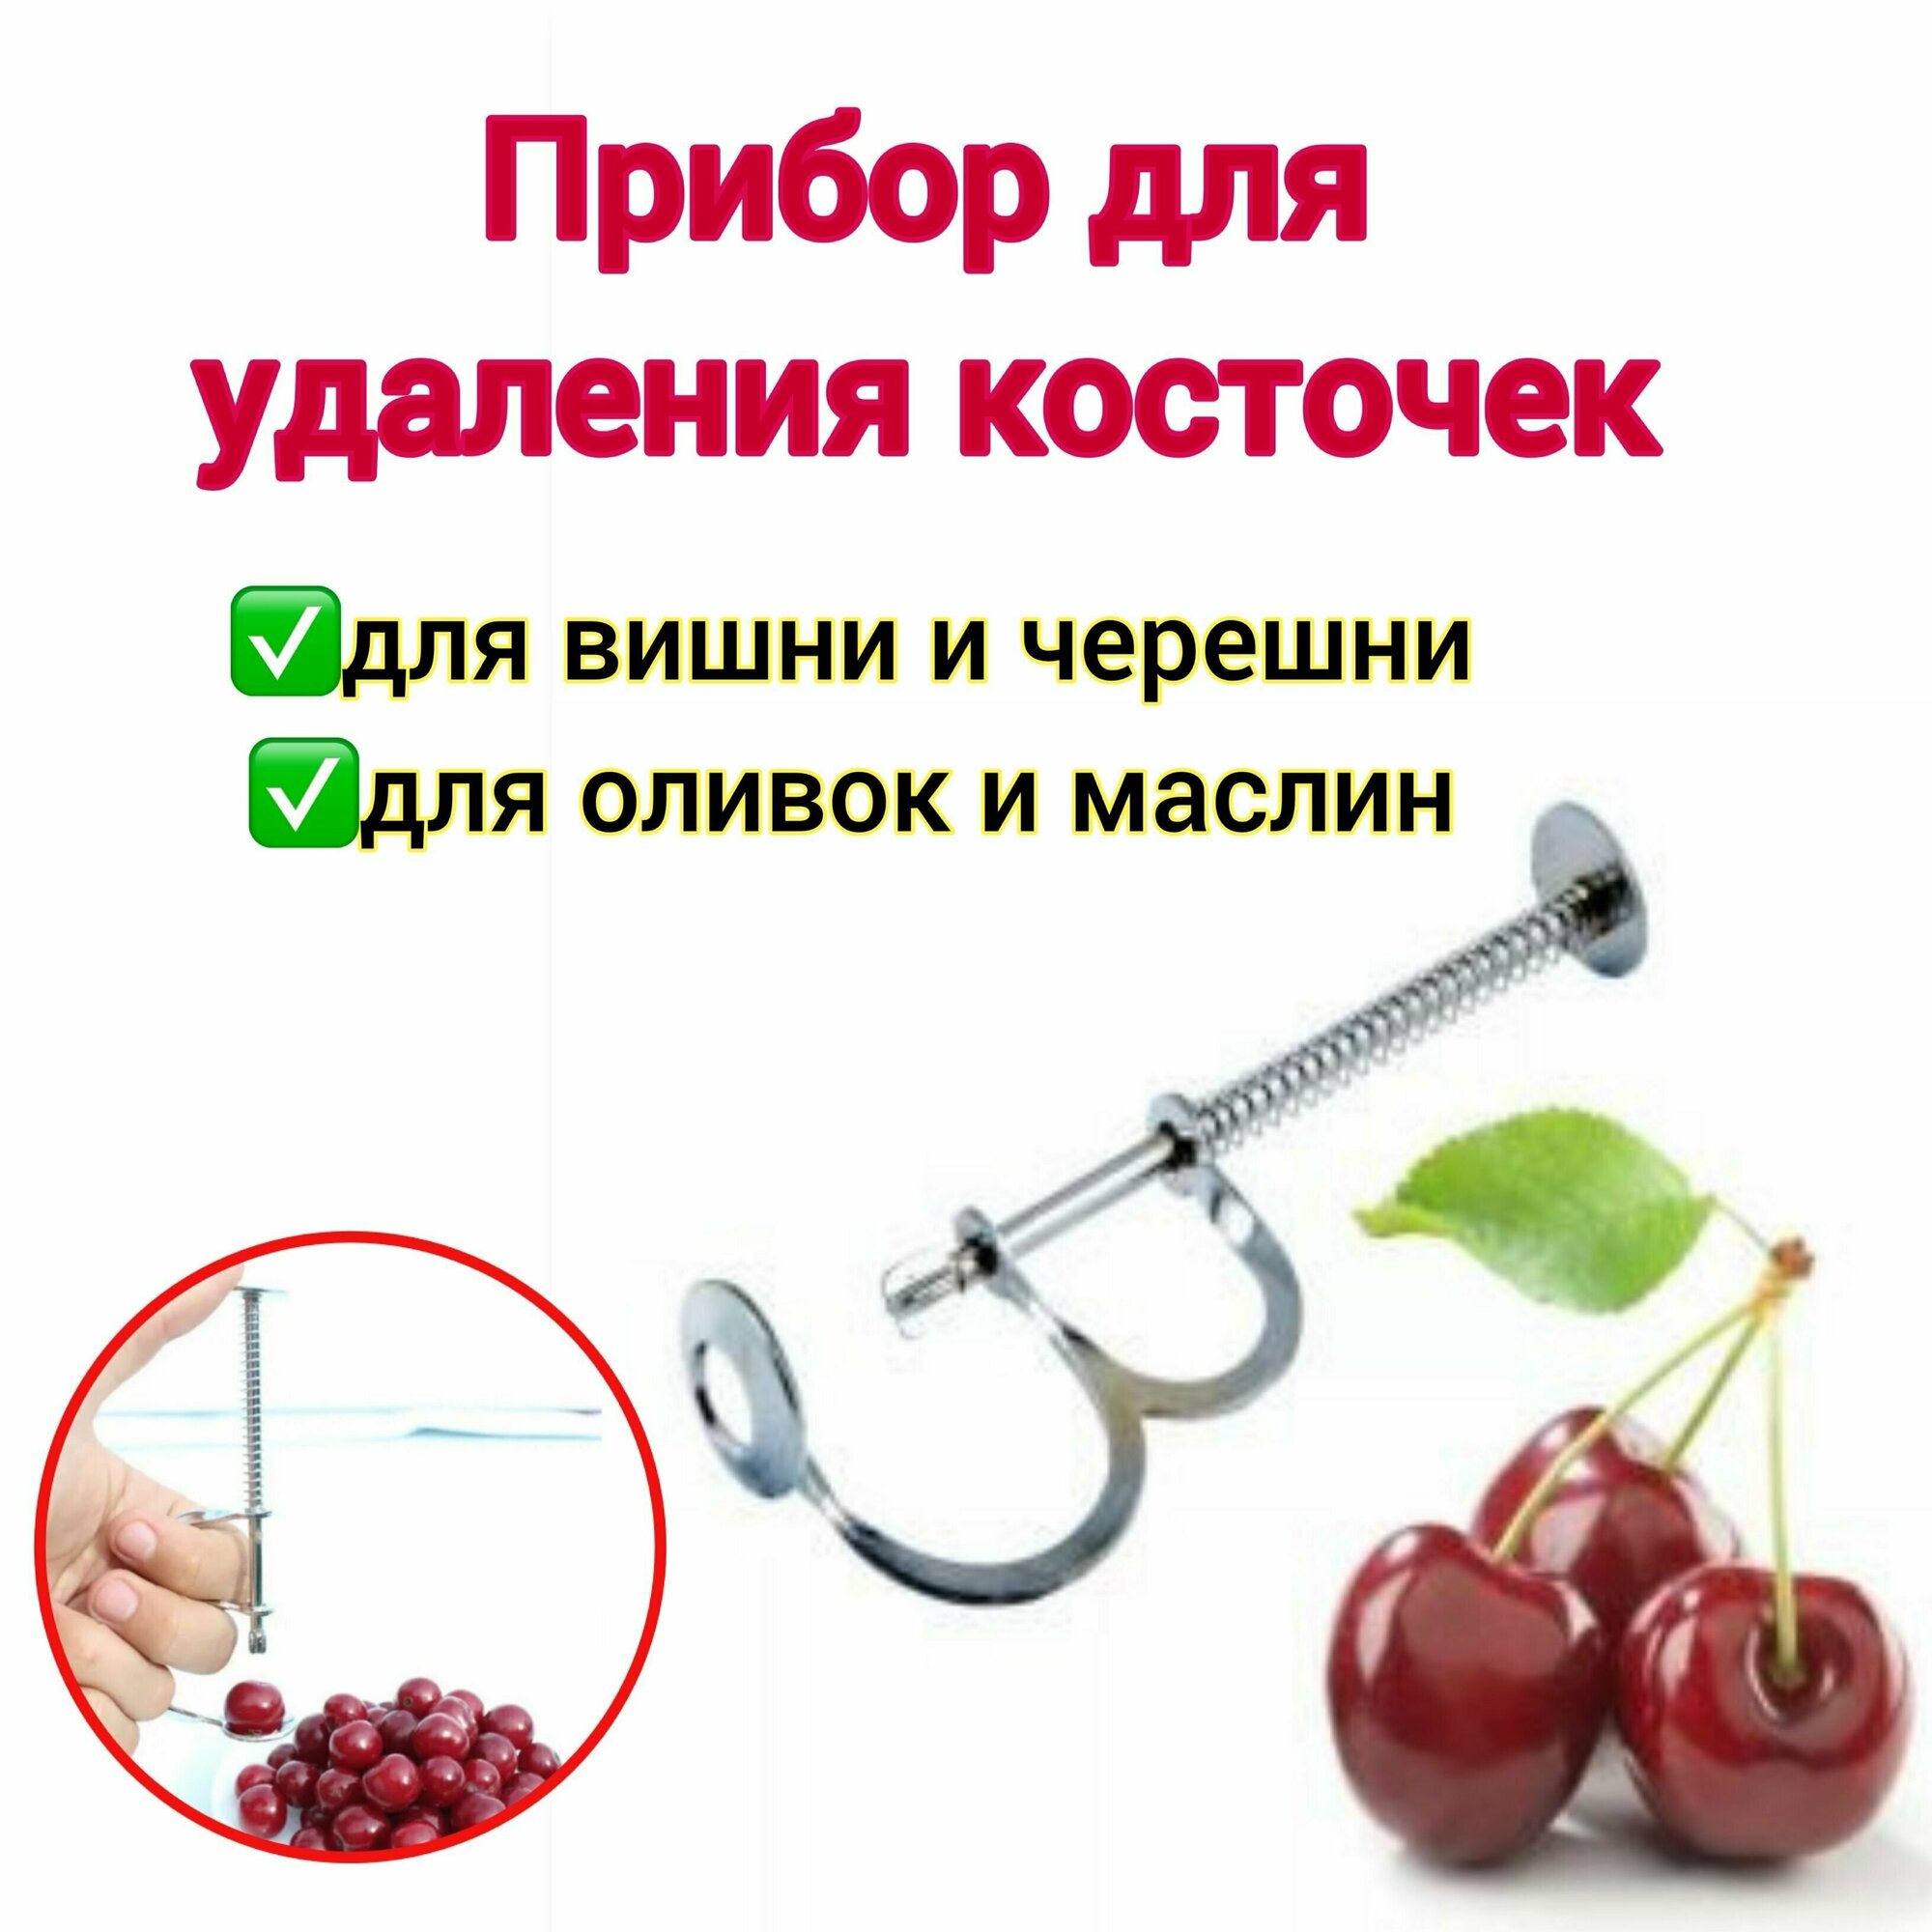 Прибор для удаления косточек из вишни черешни оливок маслин вишнедавка  удалитель косточек машинка для удаления косточек